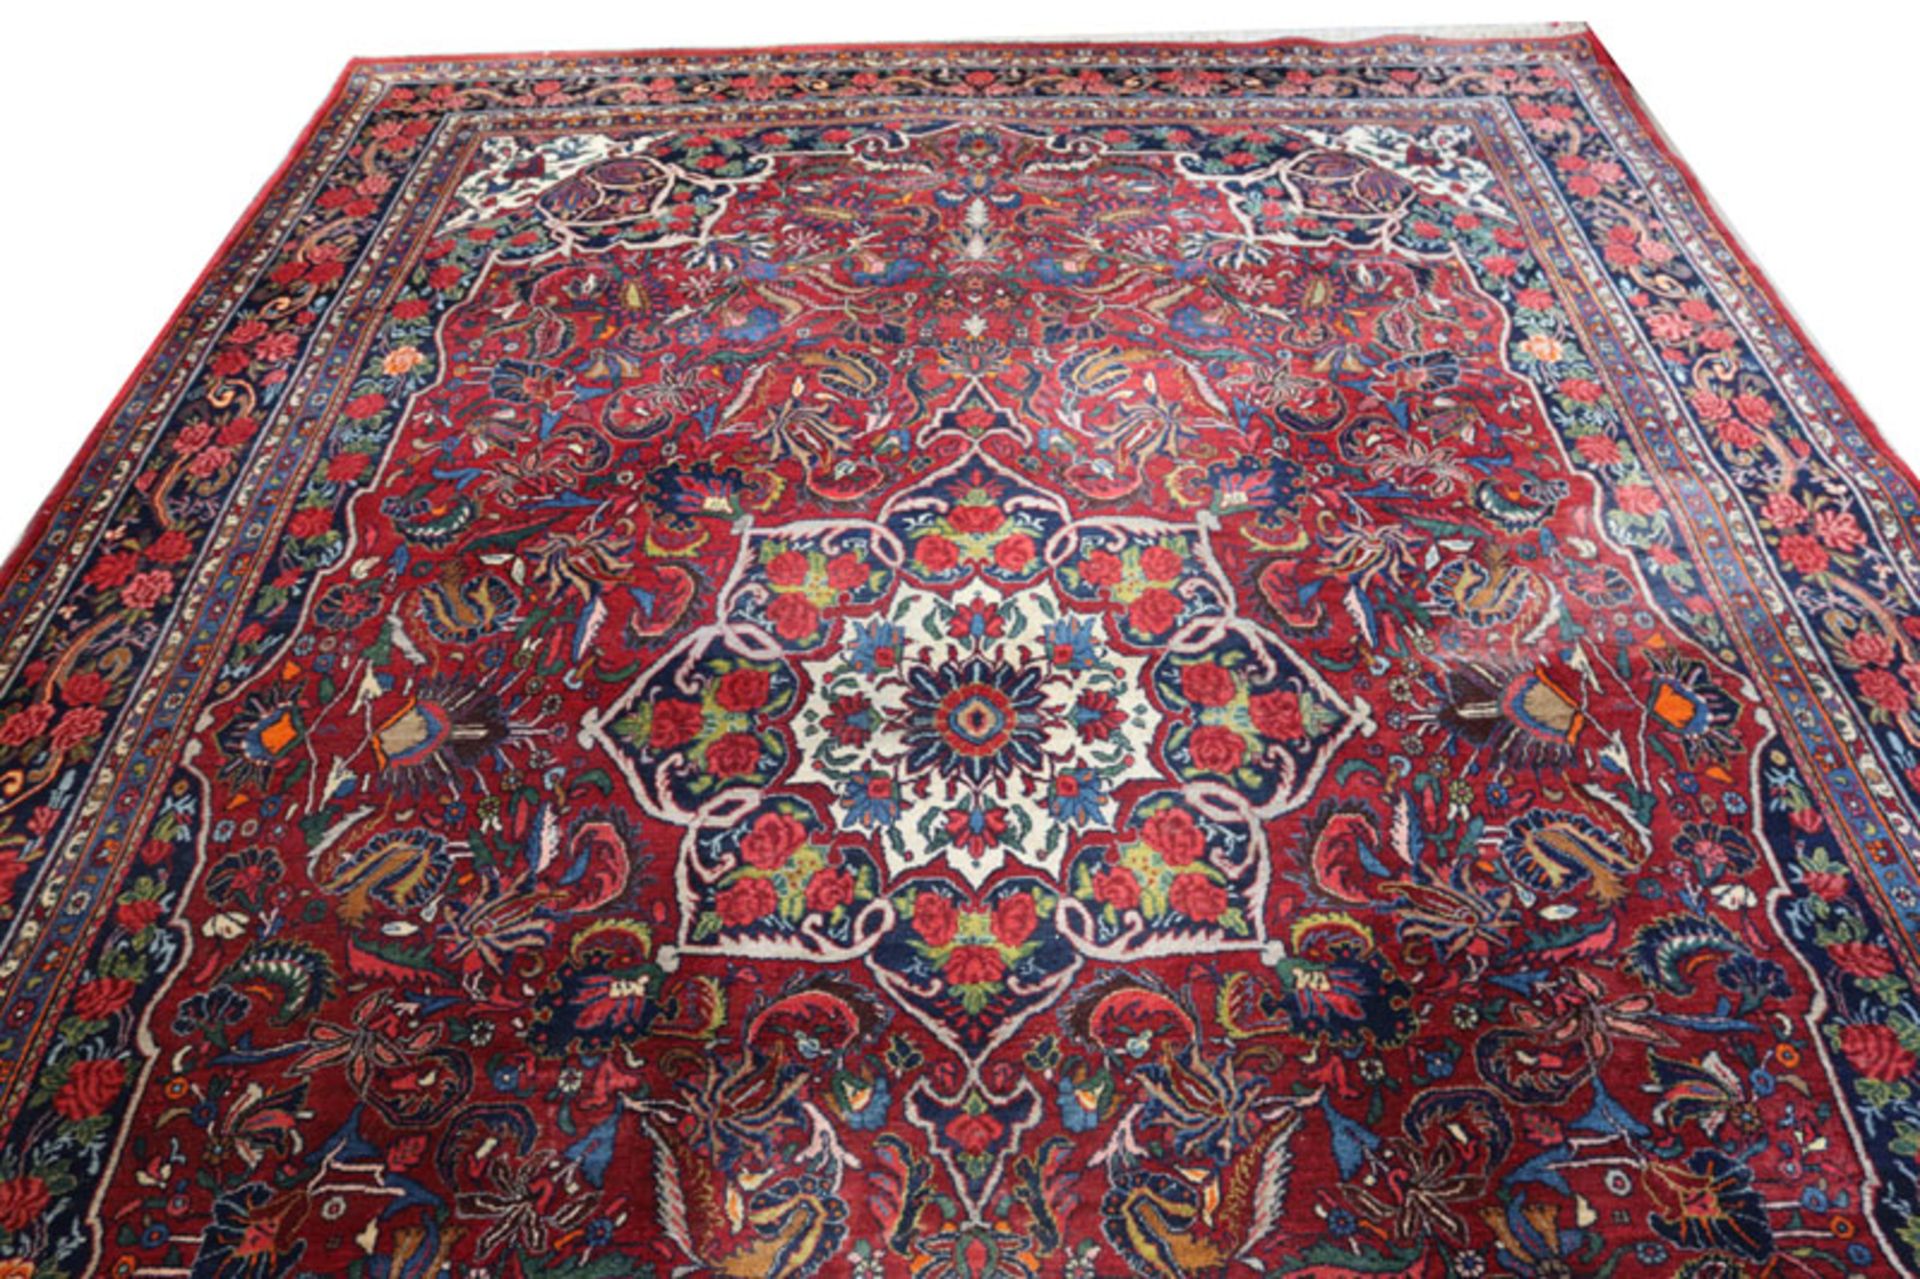 Teppich, Bachtiari, rot/blau/beige, 374 cm x 266 cm, Gebrauchsspuren